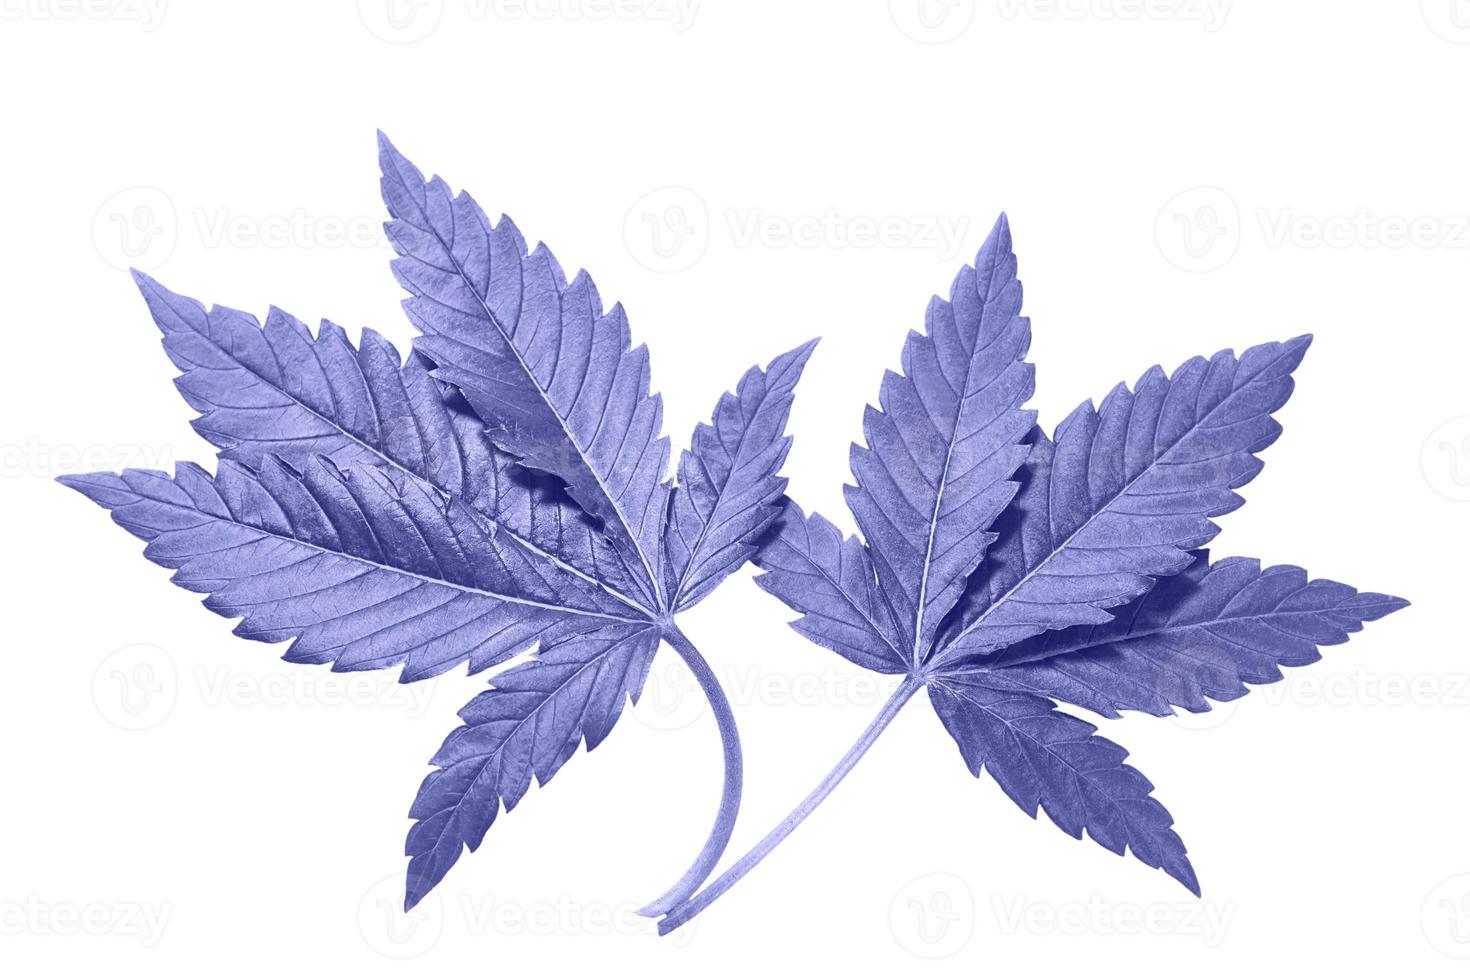 hoja de cannabis sobre un fondo blanco aislado. Las hojas de marihuana medicinal de la variedad jack herer son un híbrido de sativa e indica. foto